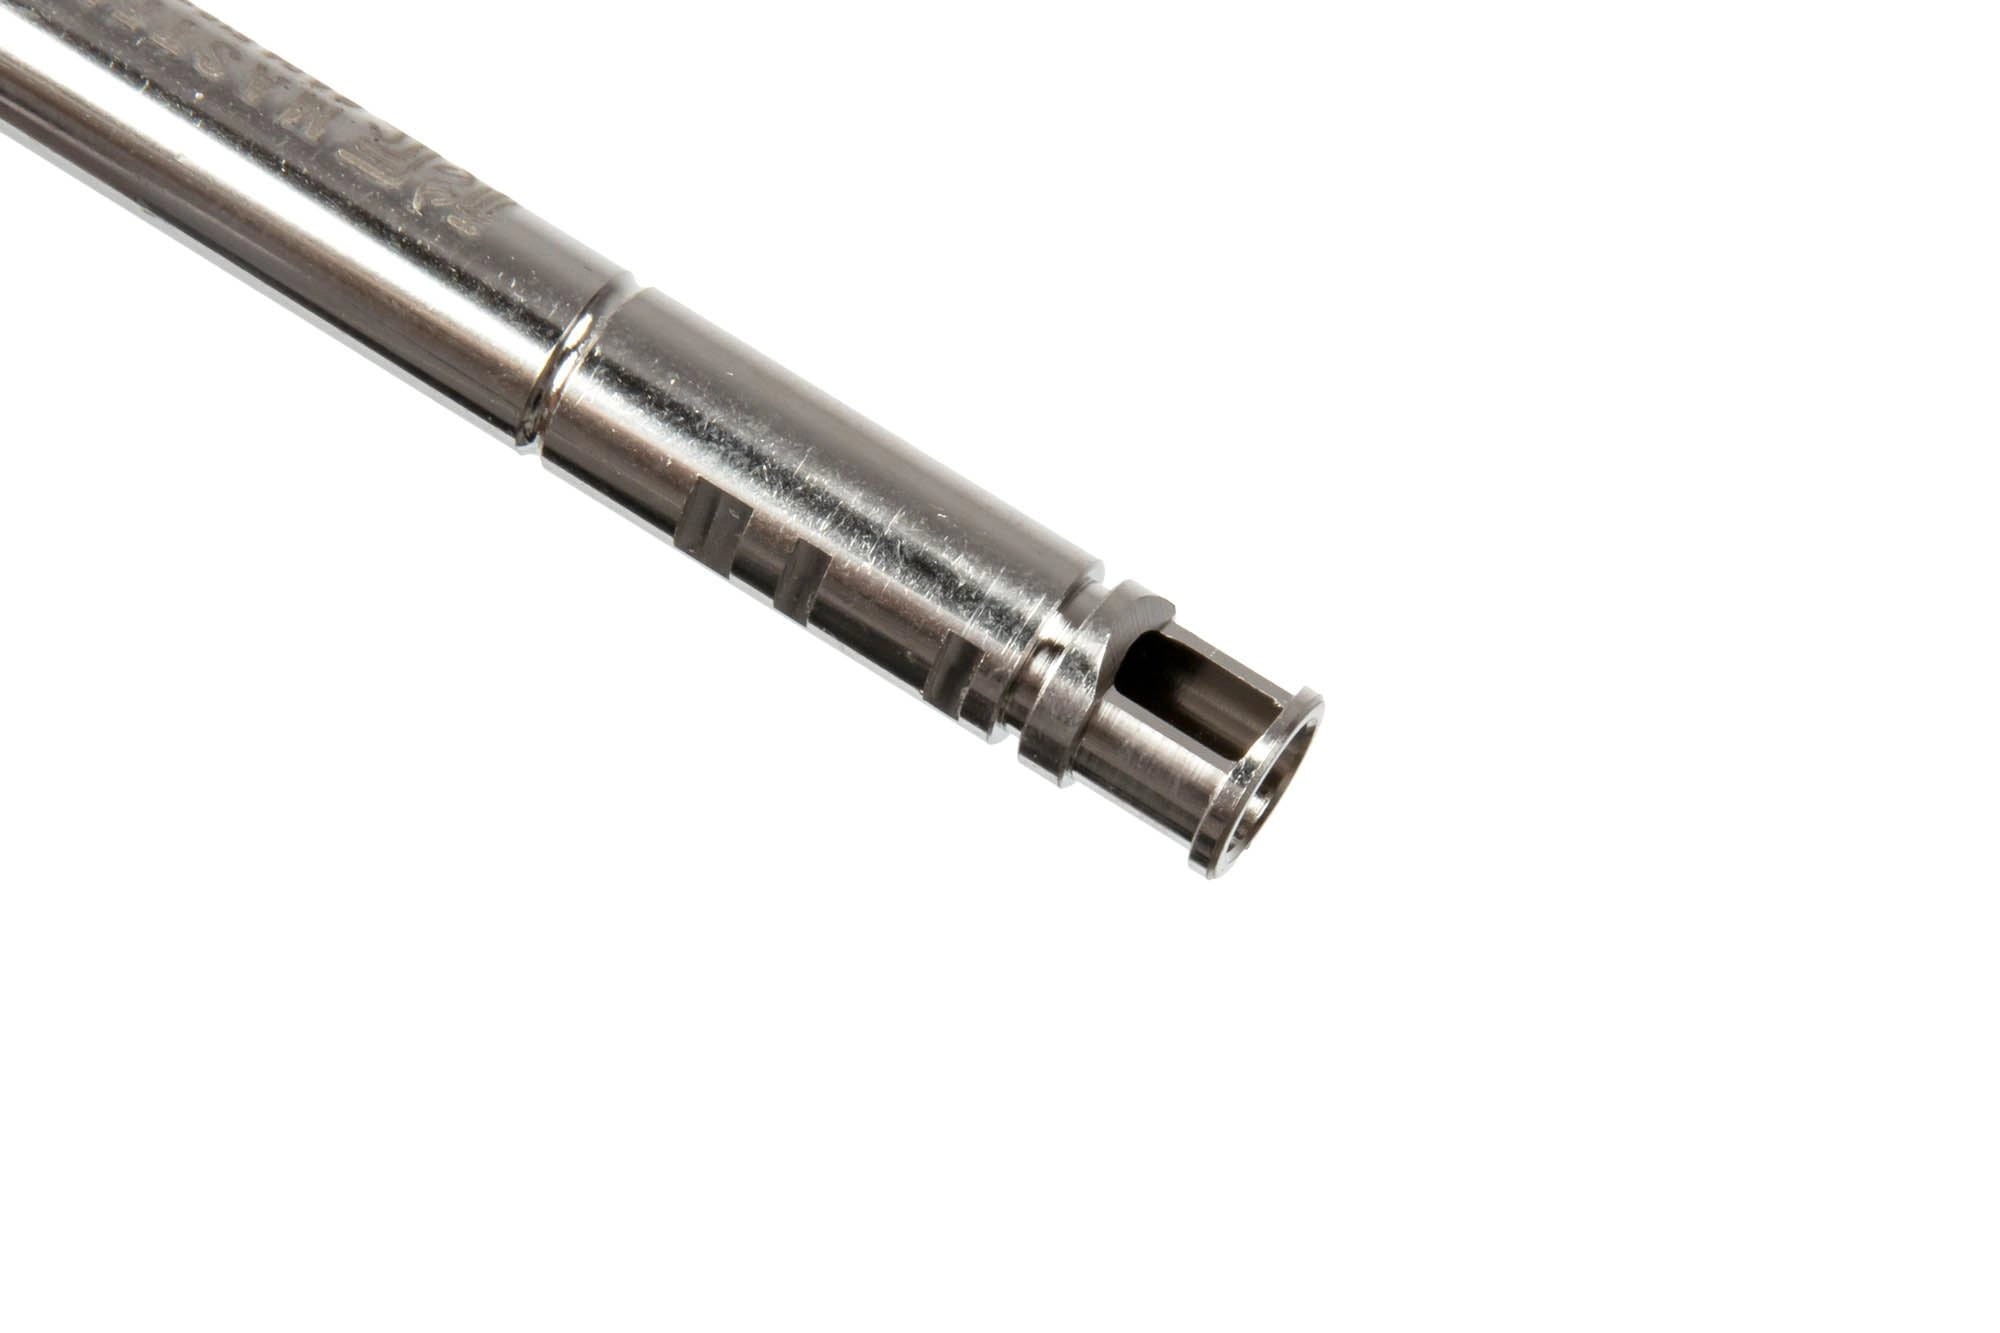 R-Hop 6.04 Precision Barrel for AEG / GBB replicas - 430mm-1